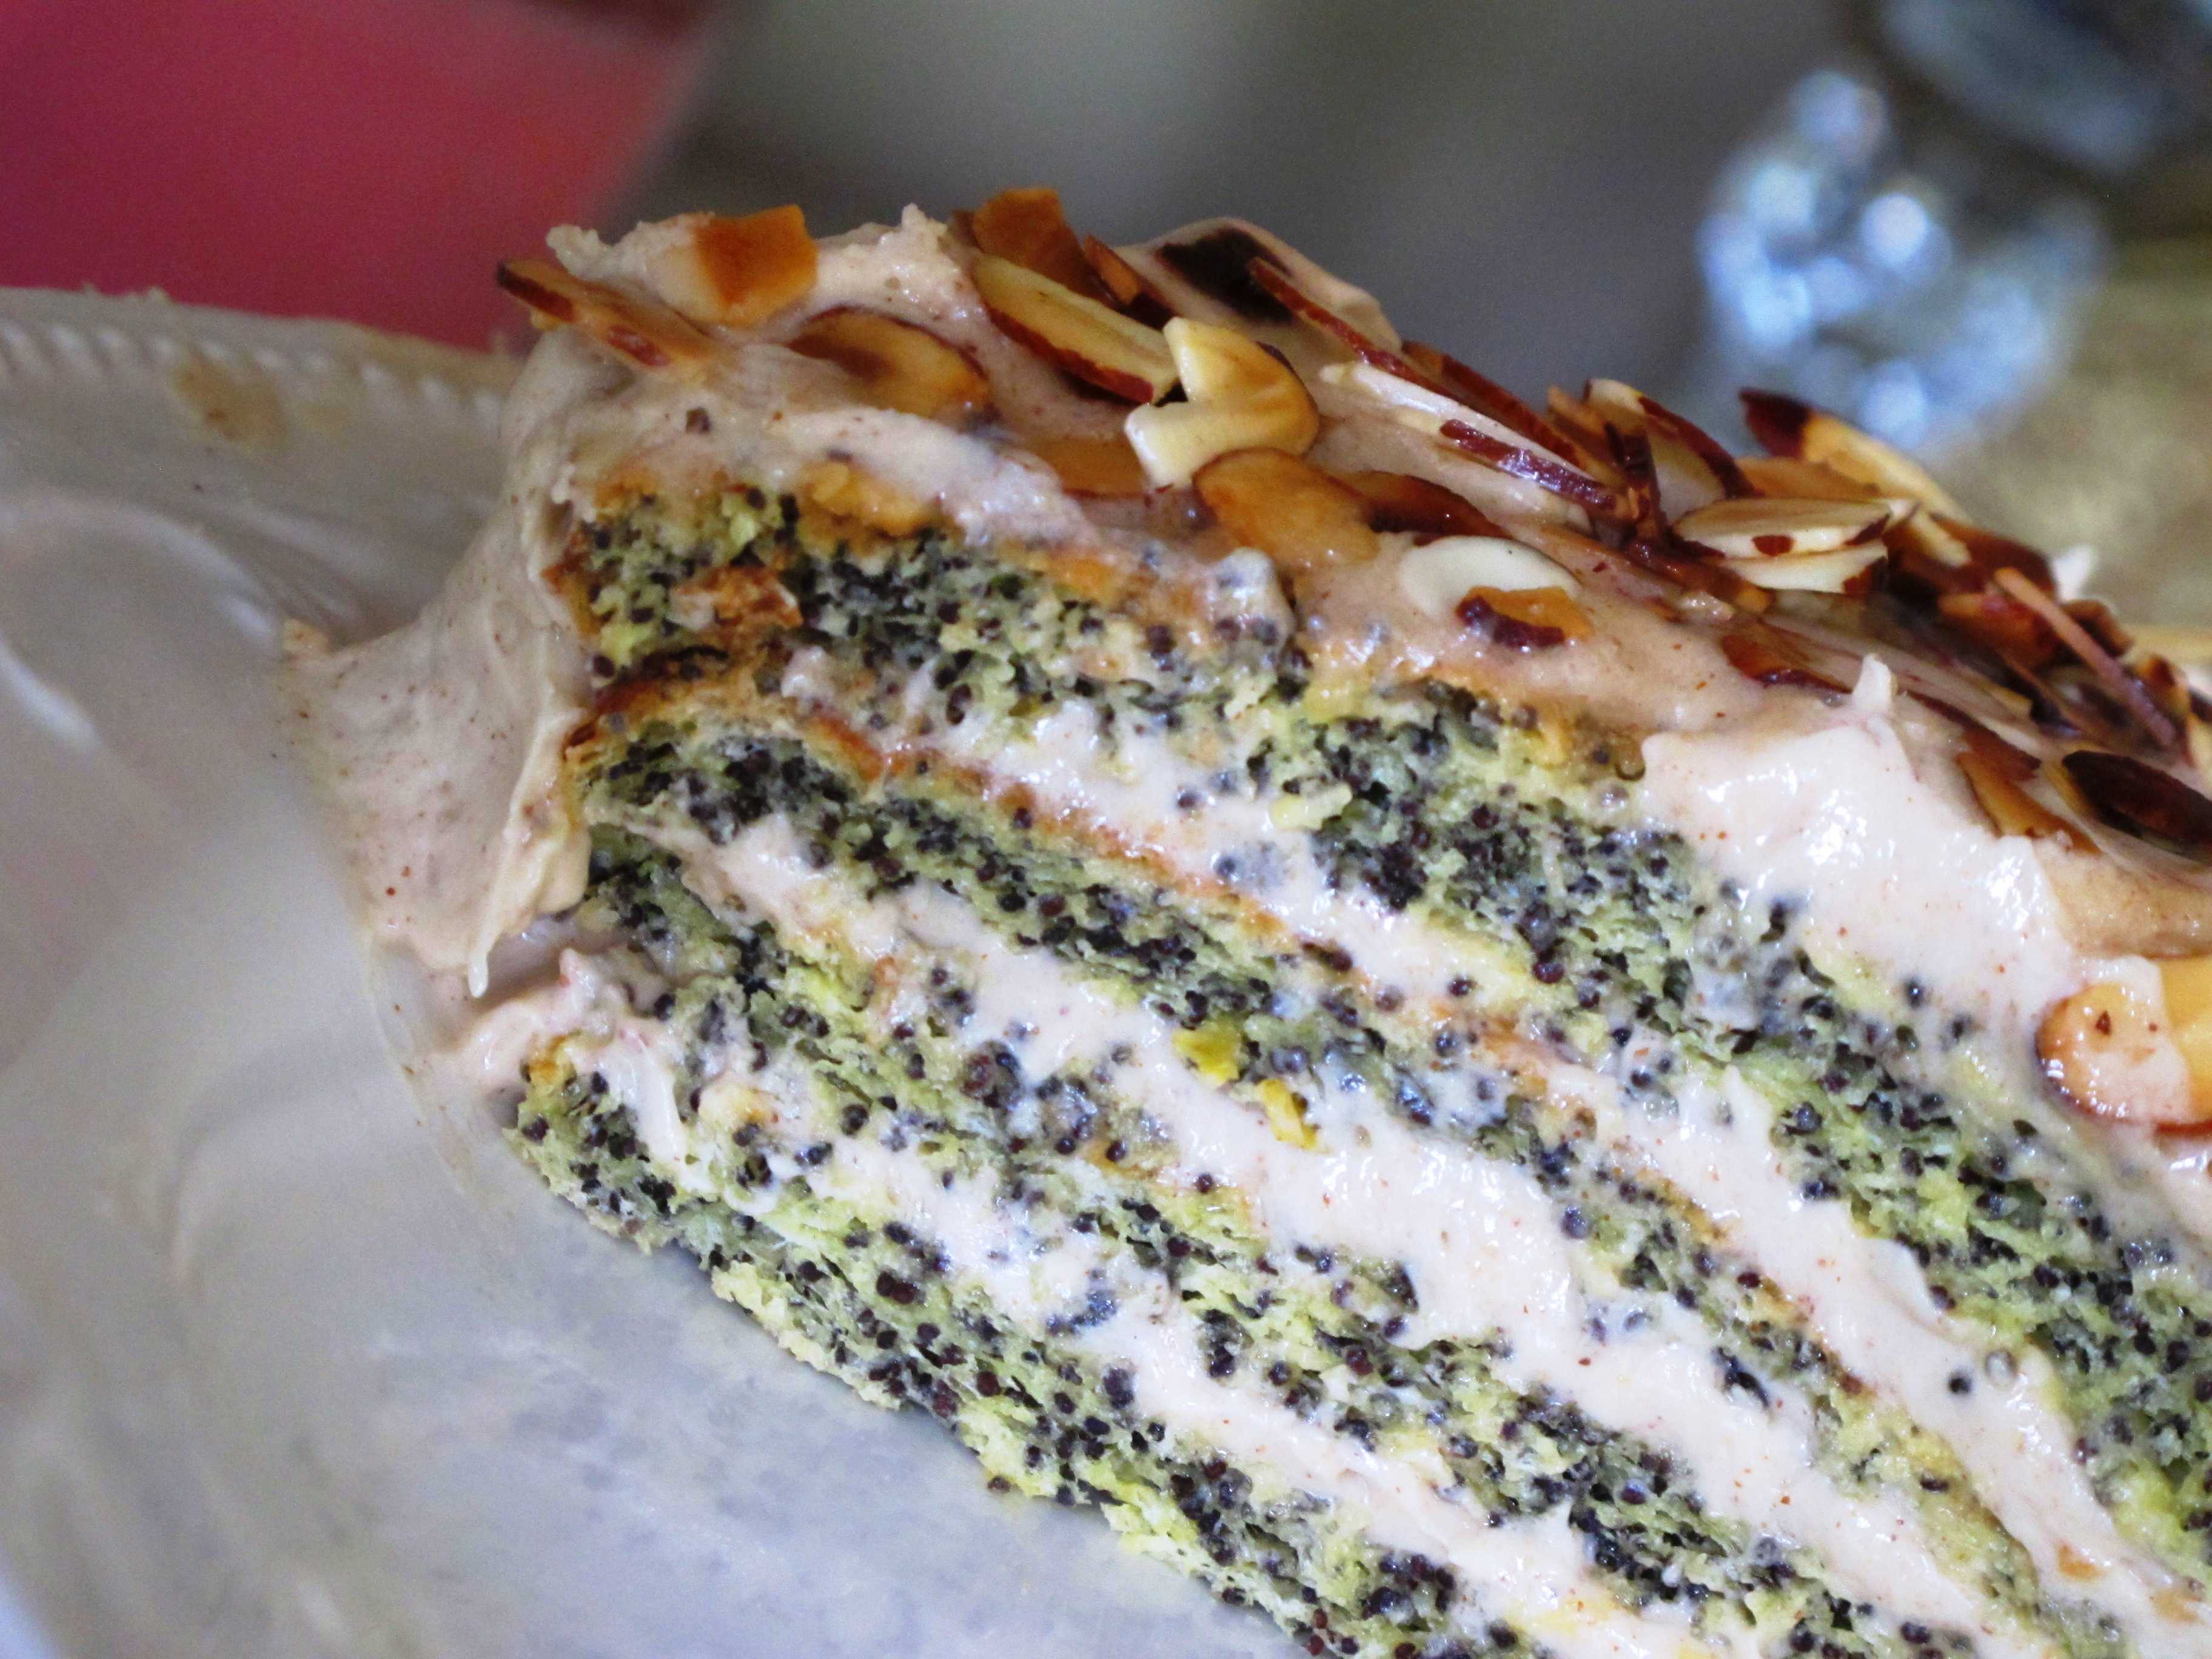 Маковый торт – 7 очень вкусных рецептов